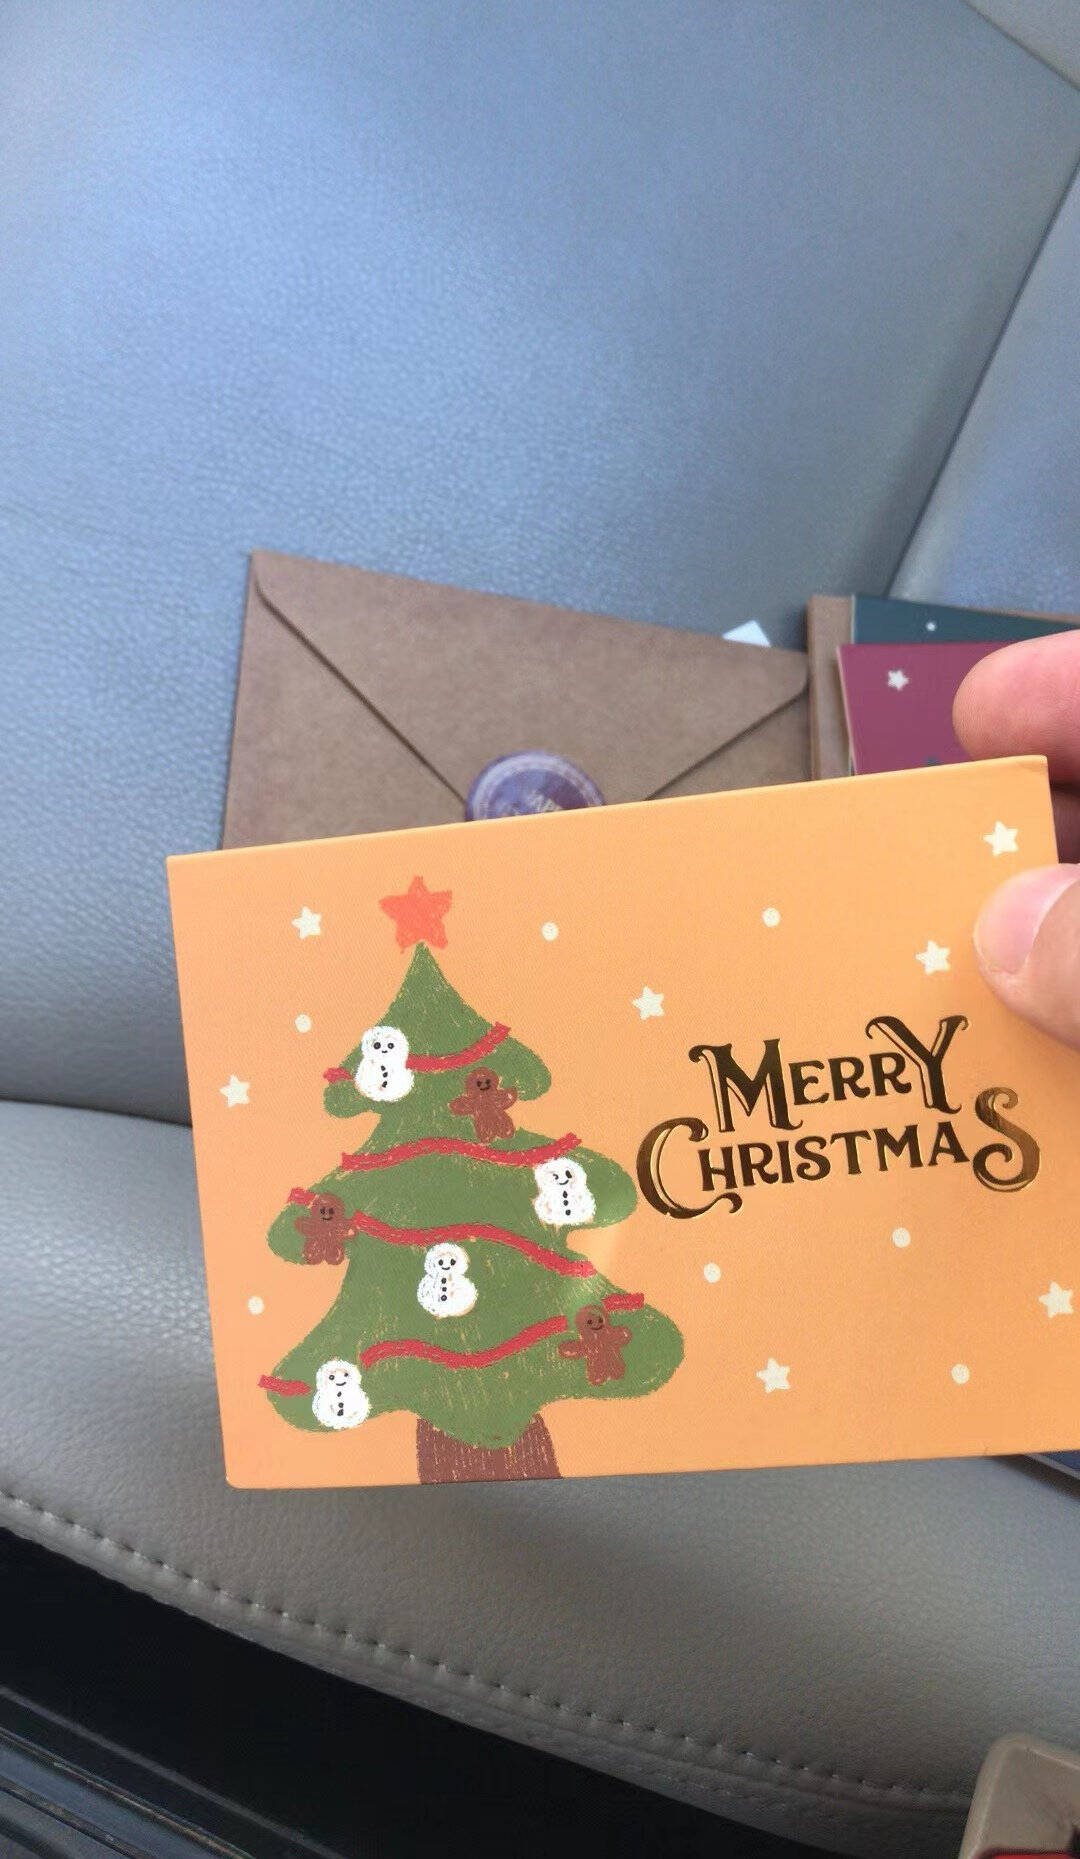 圣诞节贺卡平安夜信封贴纸圣诞节礼物送女友送朋友客户员工学生送老师diy手工贺卡套装圣诞贺卡圣诞贺卡（6卡+6信封+6枚贴纸）